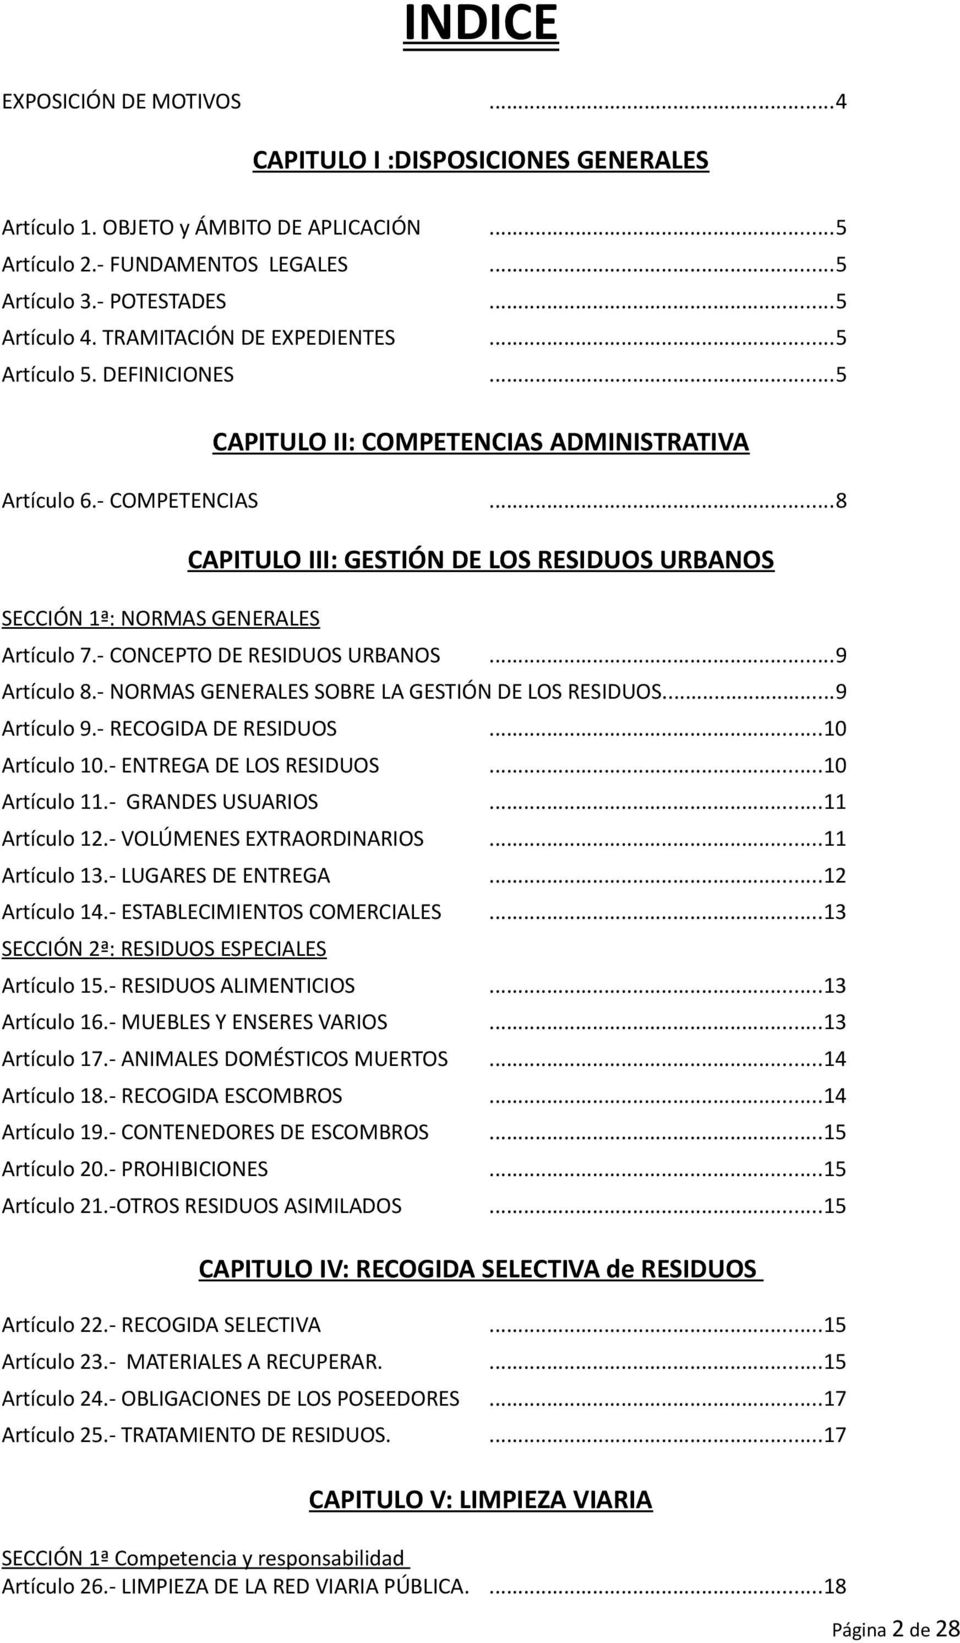 ..8 SECCIÓN 1ª: NORMAS GENERALES CAPITULO III: GESTIÓN DE LOS RESIDUOS URBANOS Artículo 7.- CONCEPTO DE RESIDUOS URBANOS...9 Artículo 8.- NORMAS GENERALES SOBRE LA GESTIÓN DE LOS RESIDUOS.